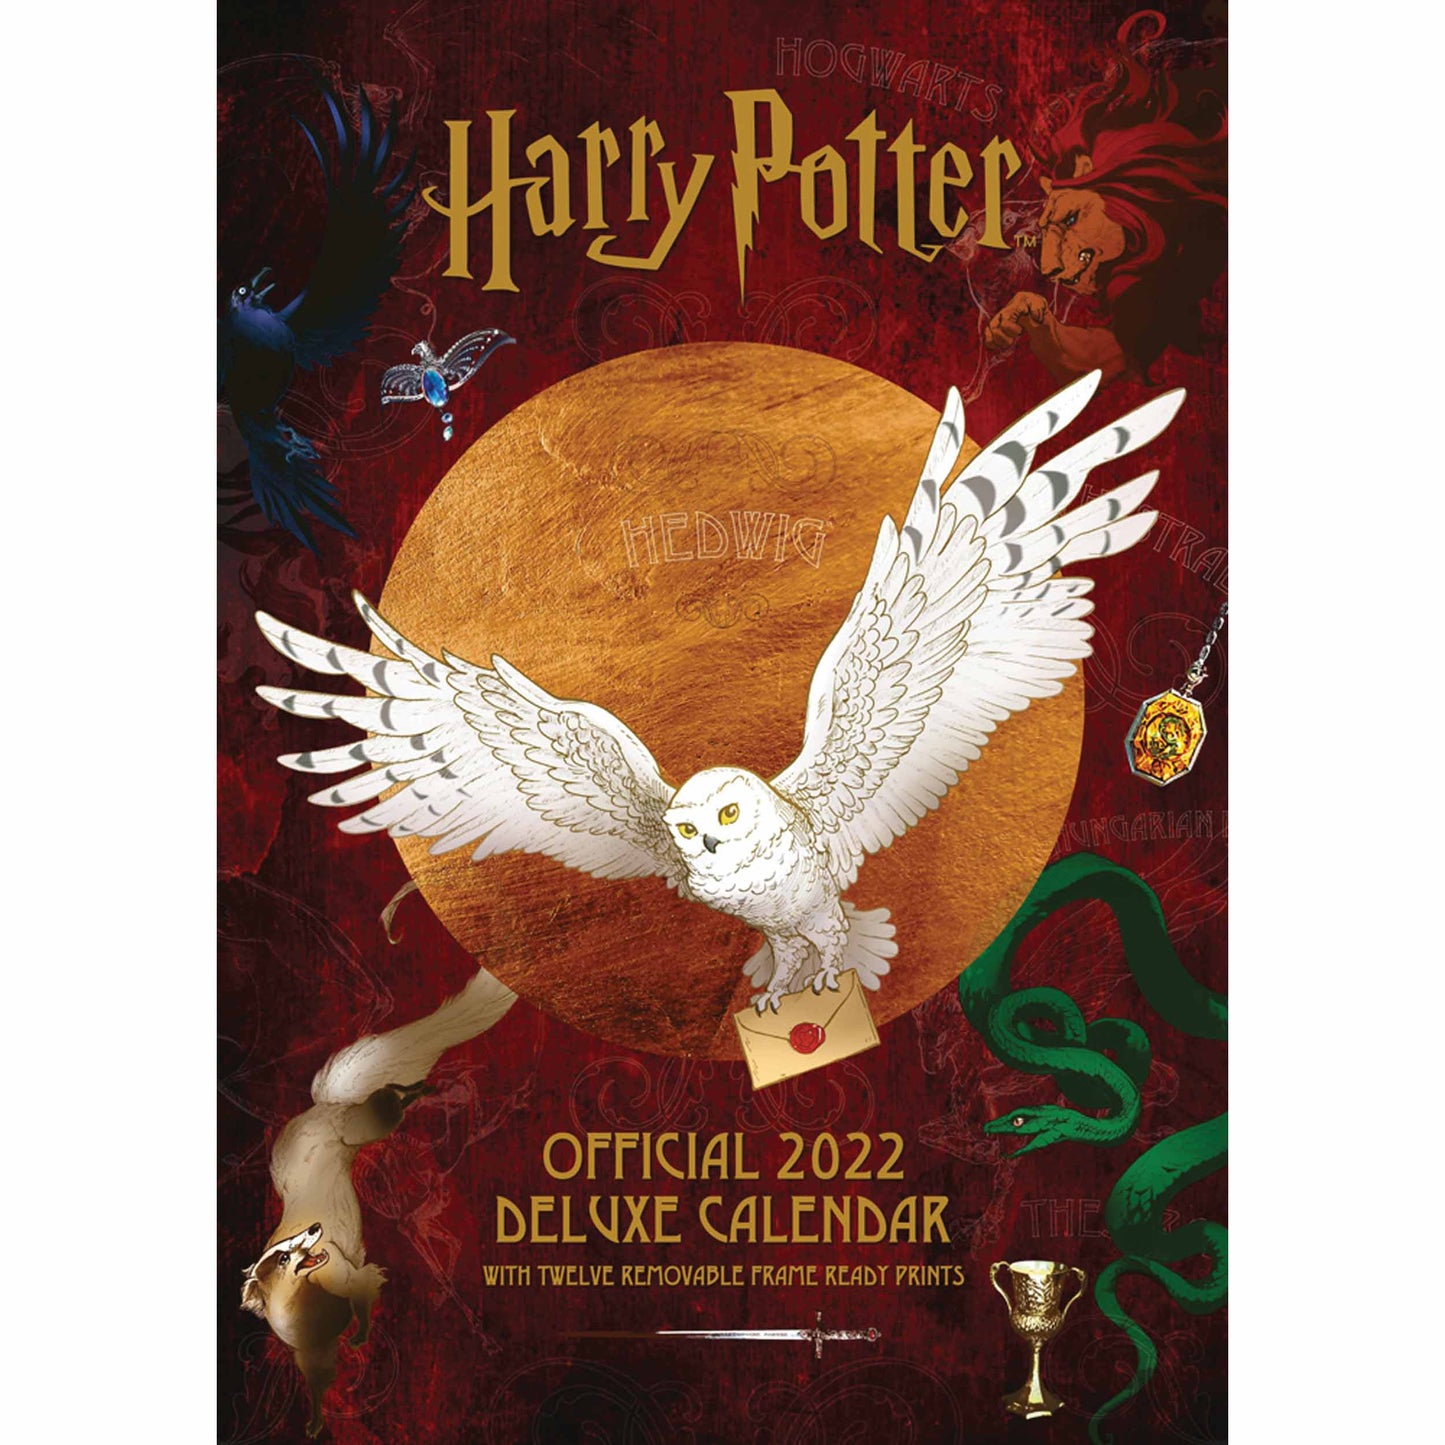 Harry Potter Deluxe Calendar 2022